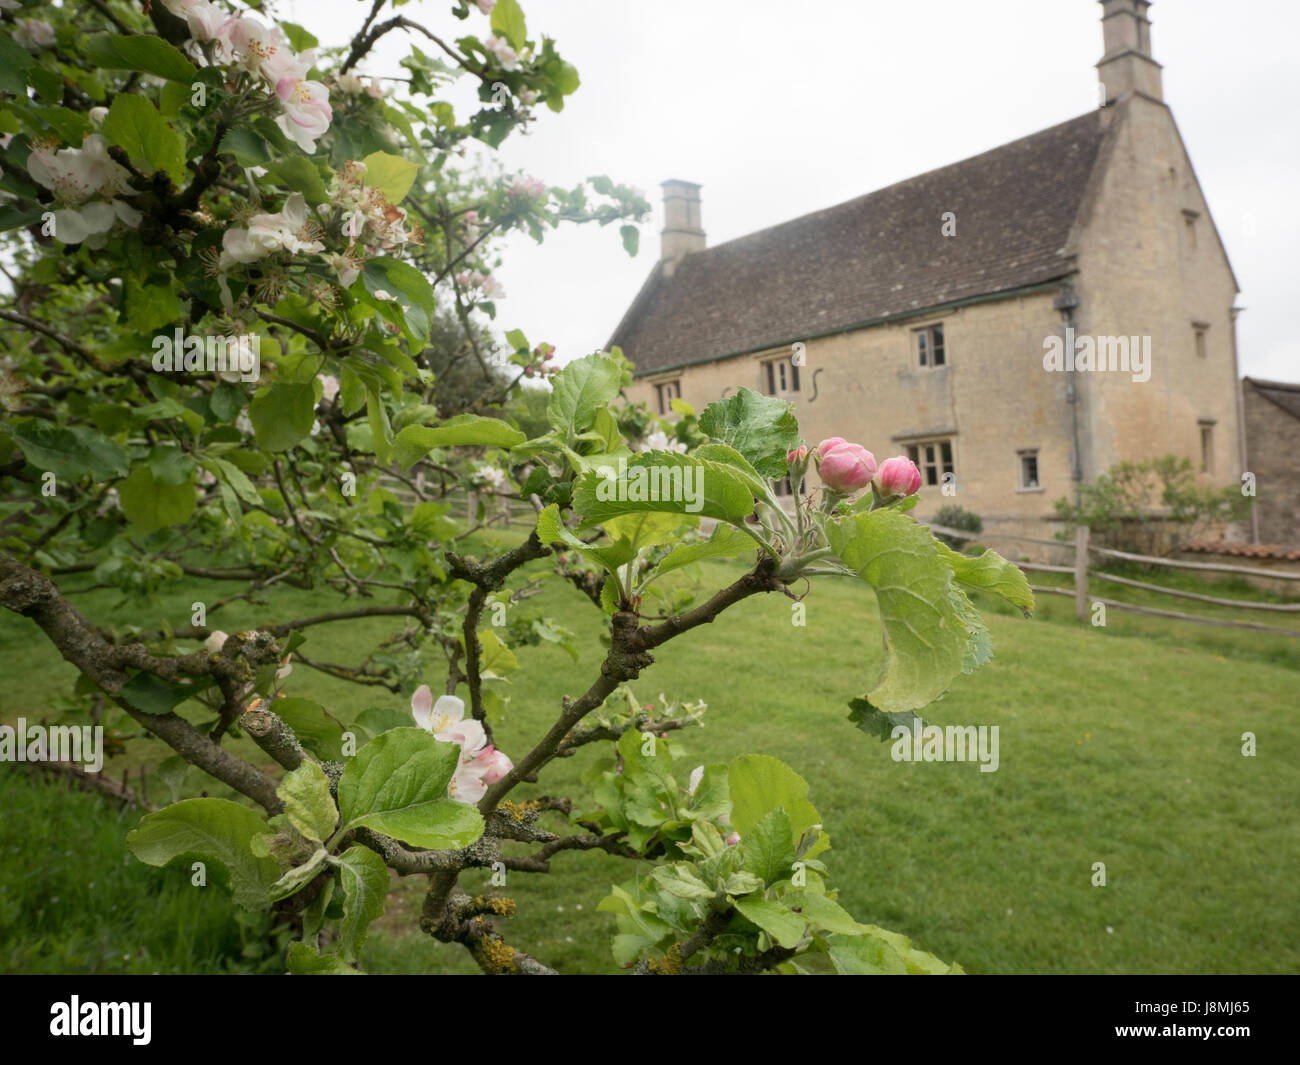 Woolsthorpe Manor, Heimat von Sir Isaac Newton in Lincolnshire, England und der noch blühenden Apfelbaum, der gebar Newtons Gesetz der Schwerkraft. Stockfoto